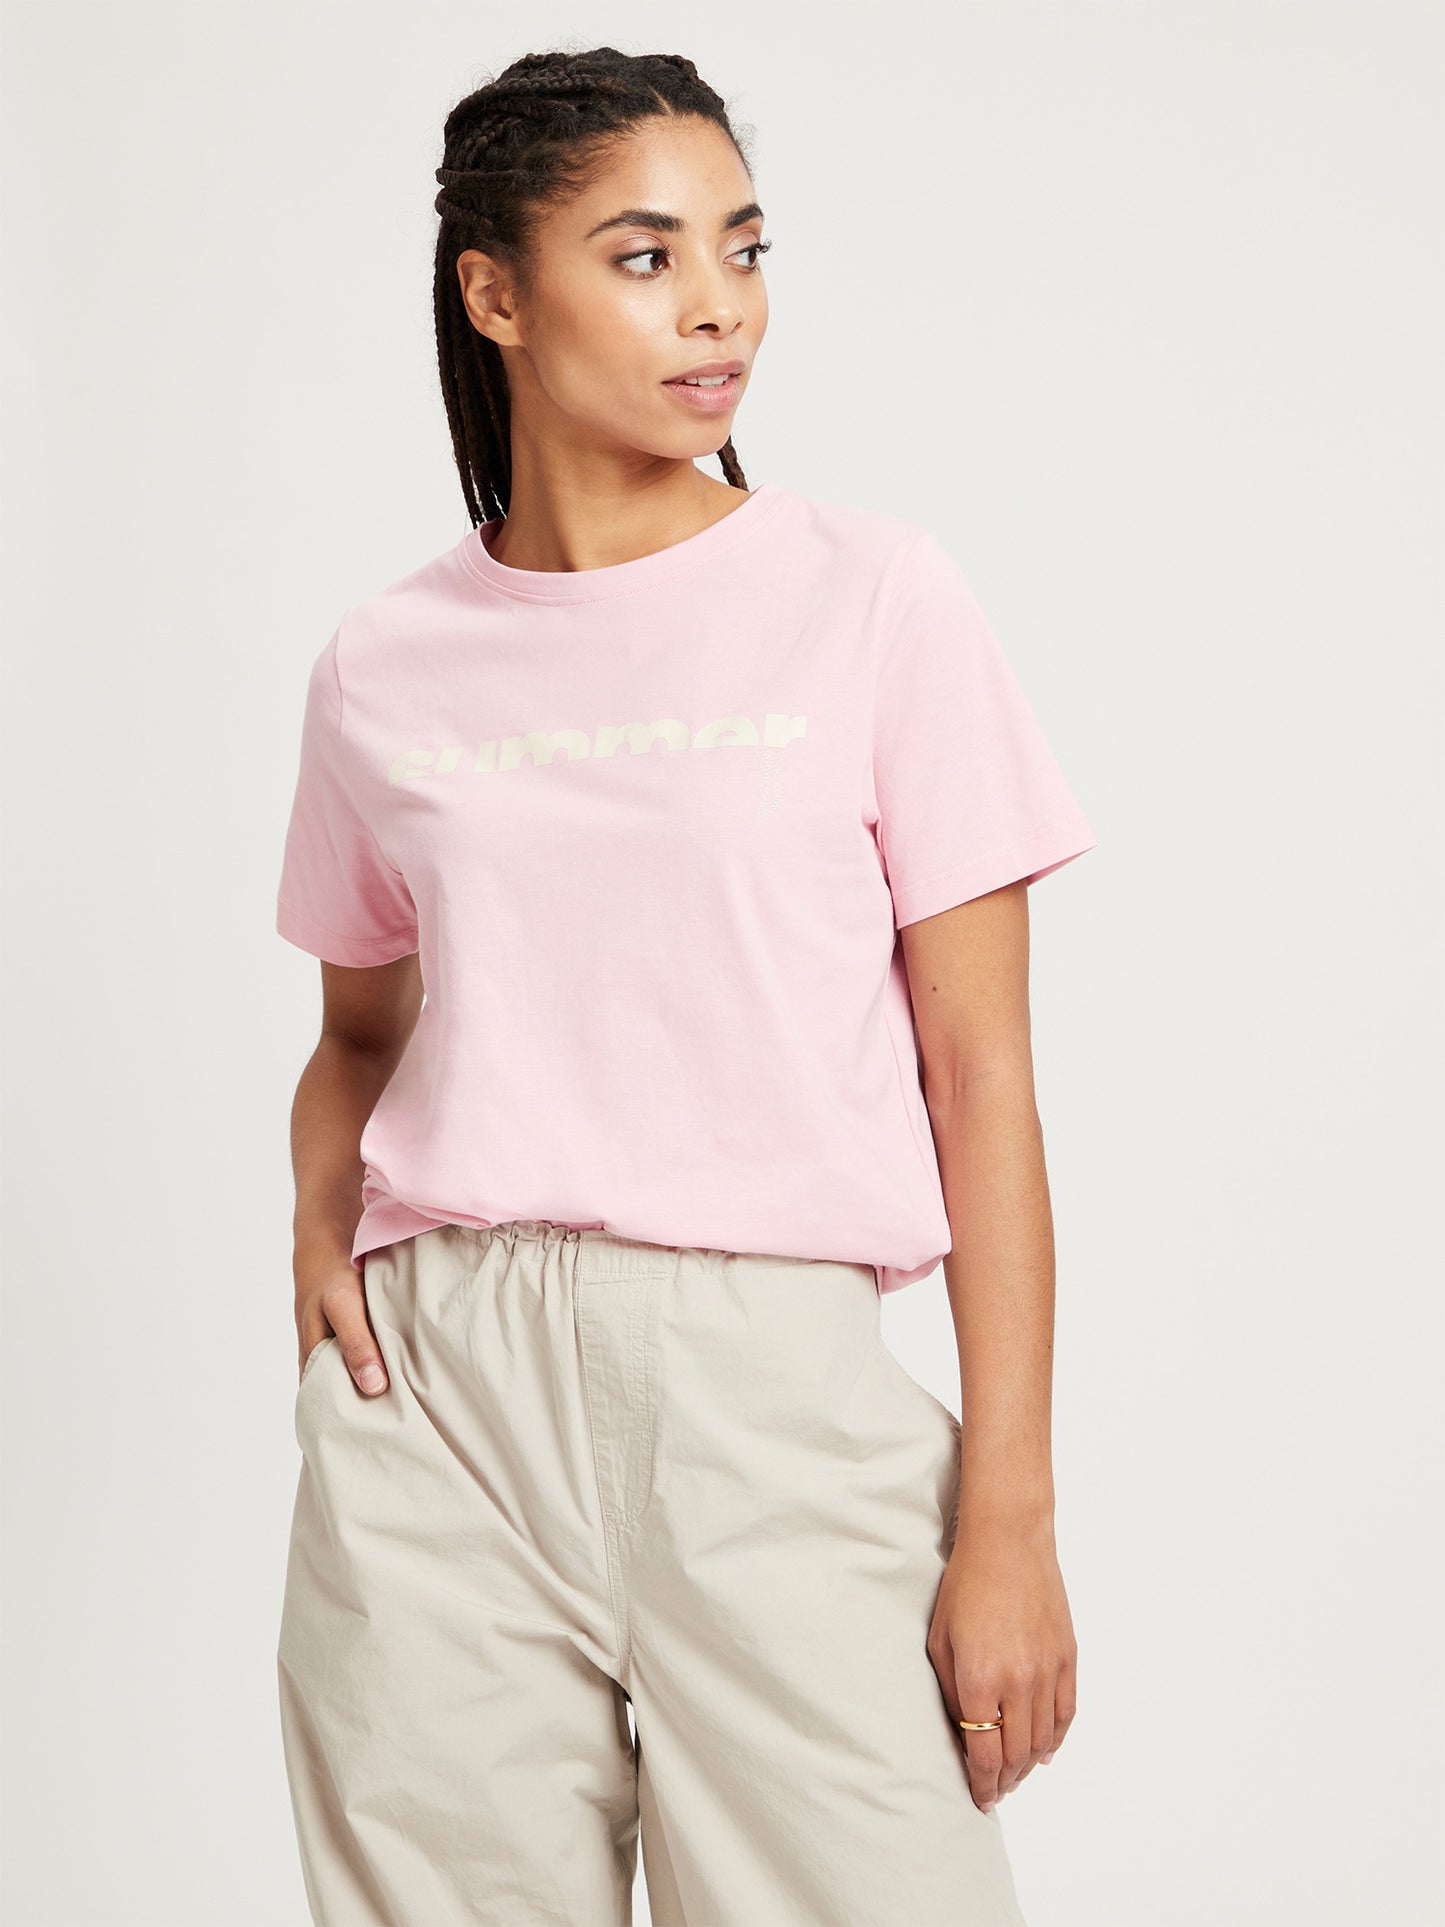 Damen Regular T-Shirt mit Slogan-Print pink.